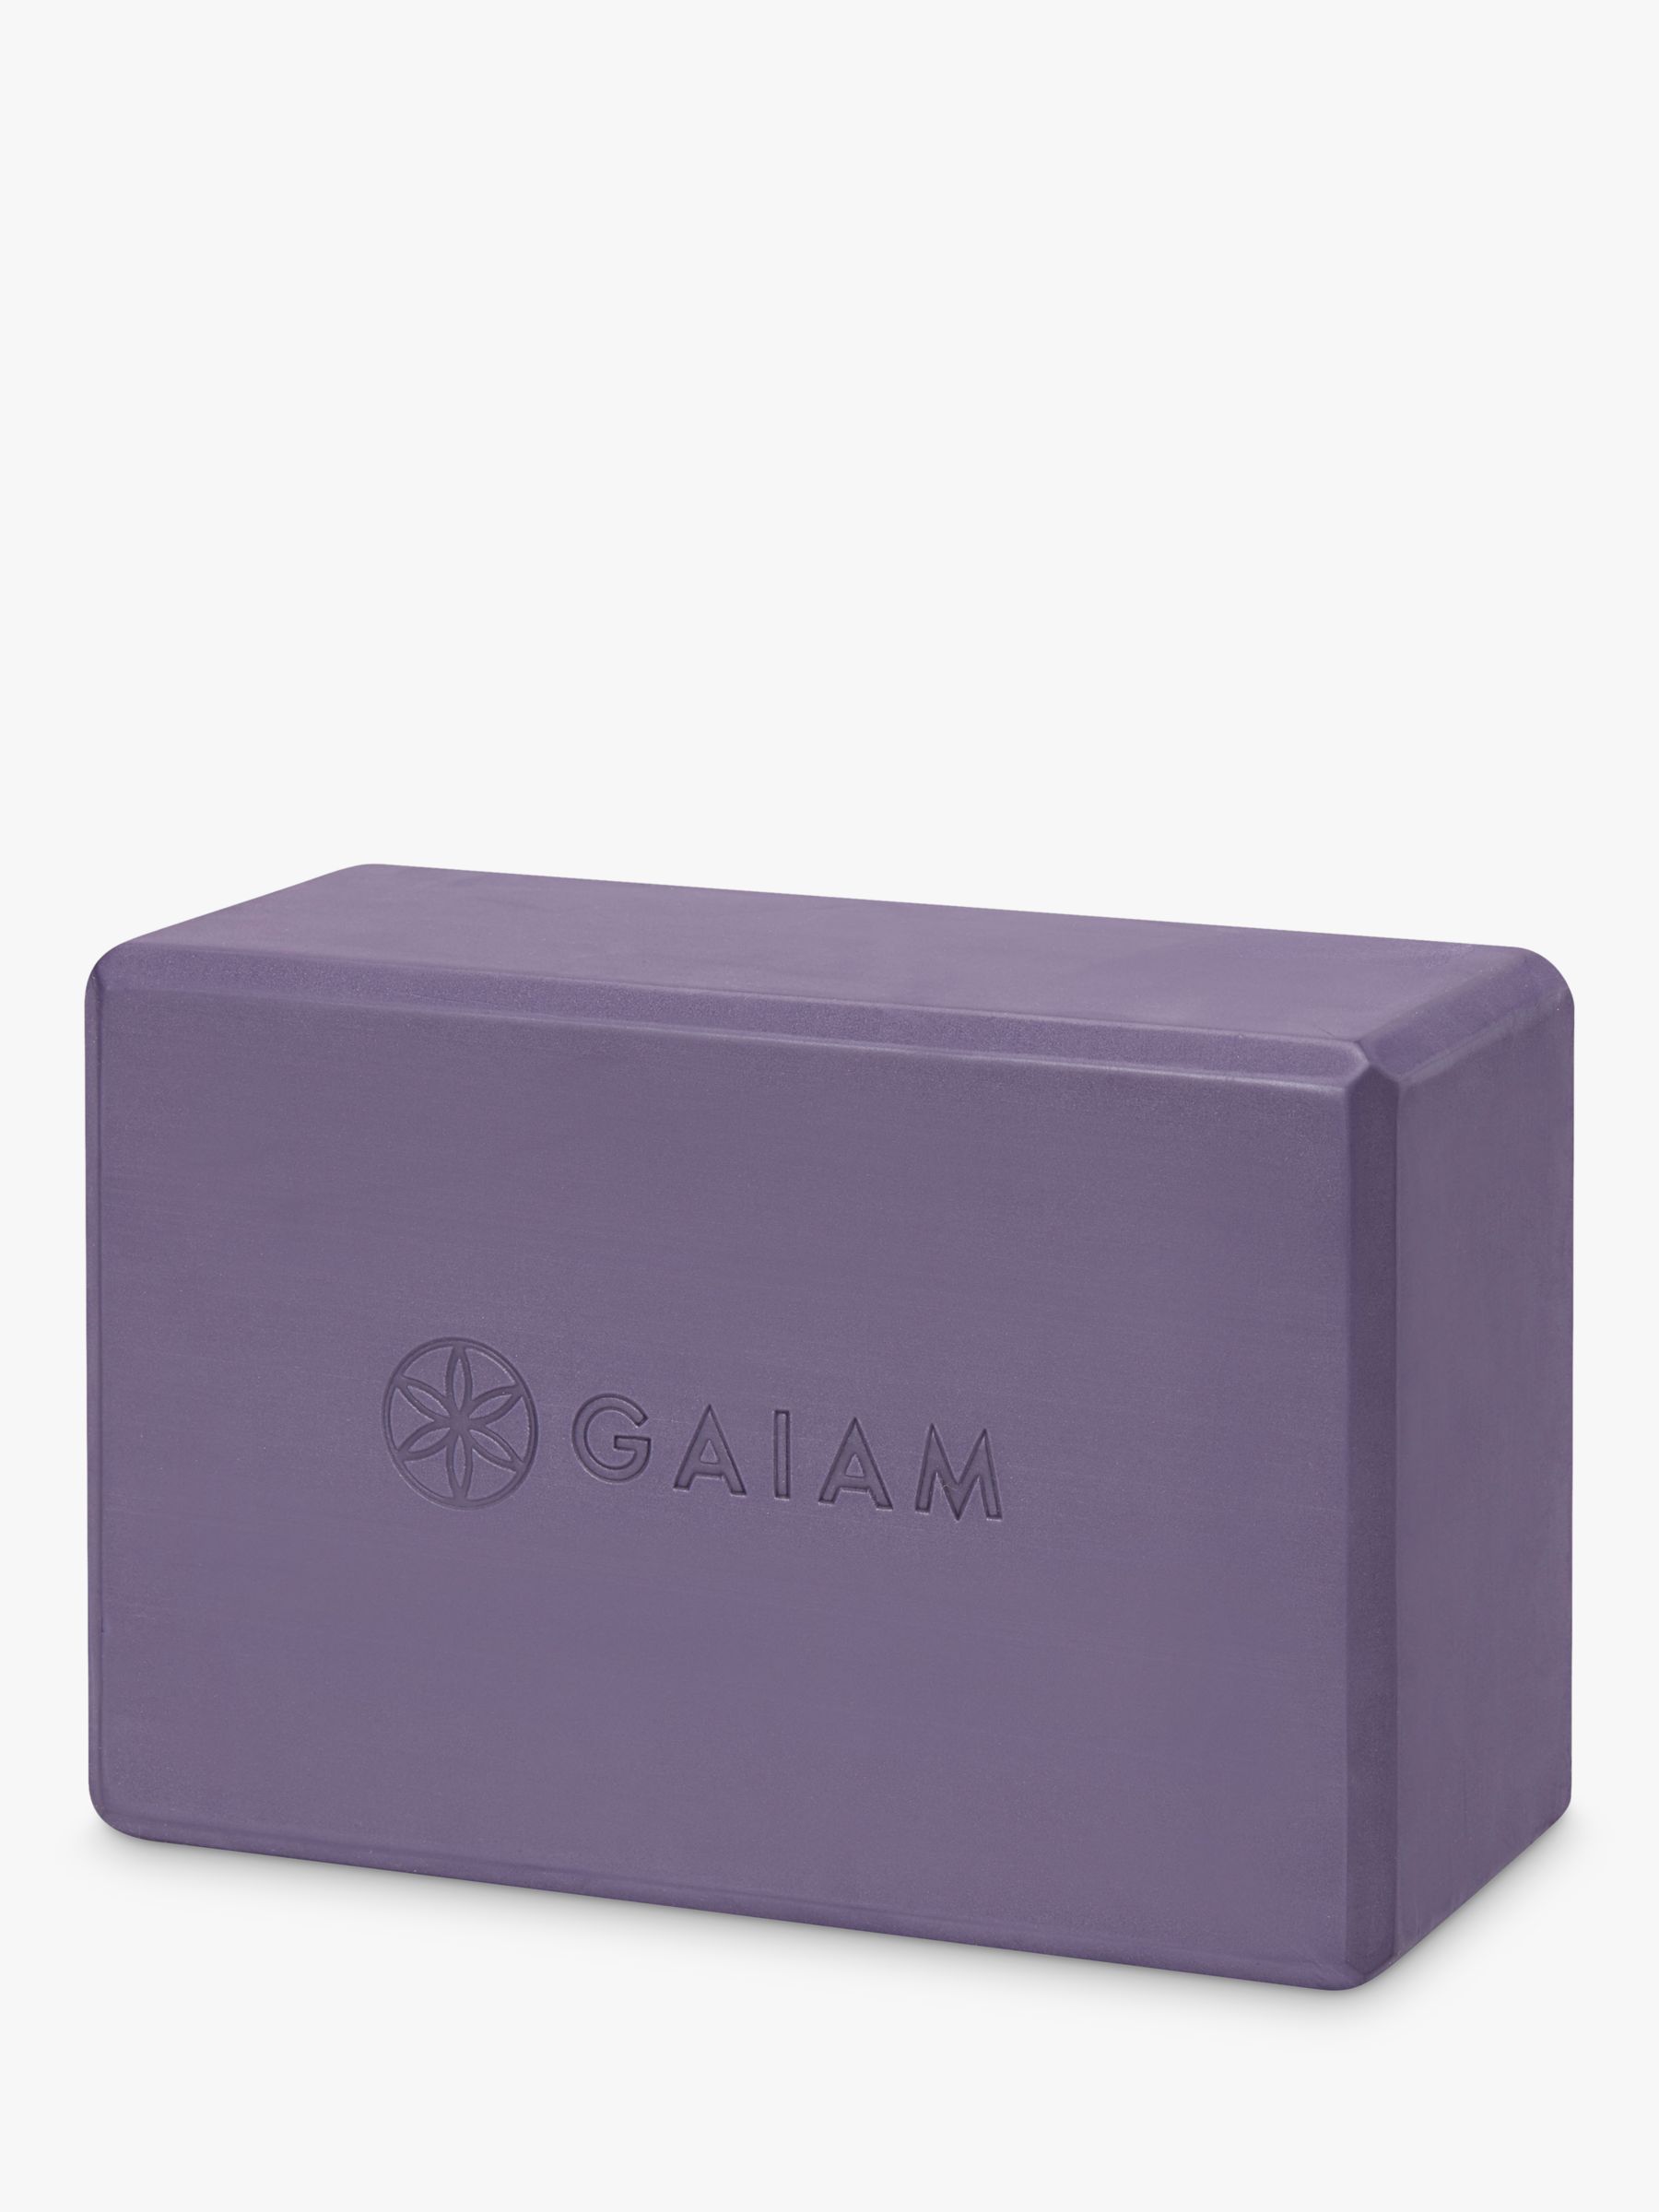 Gaiam Printed Yoga Block